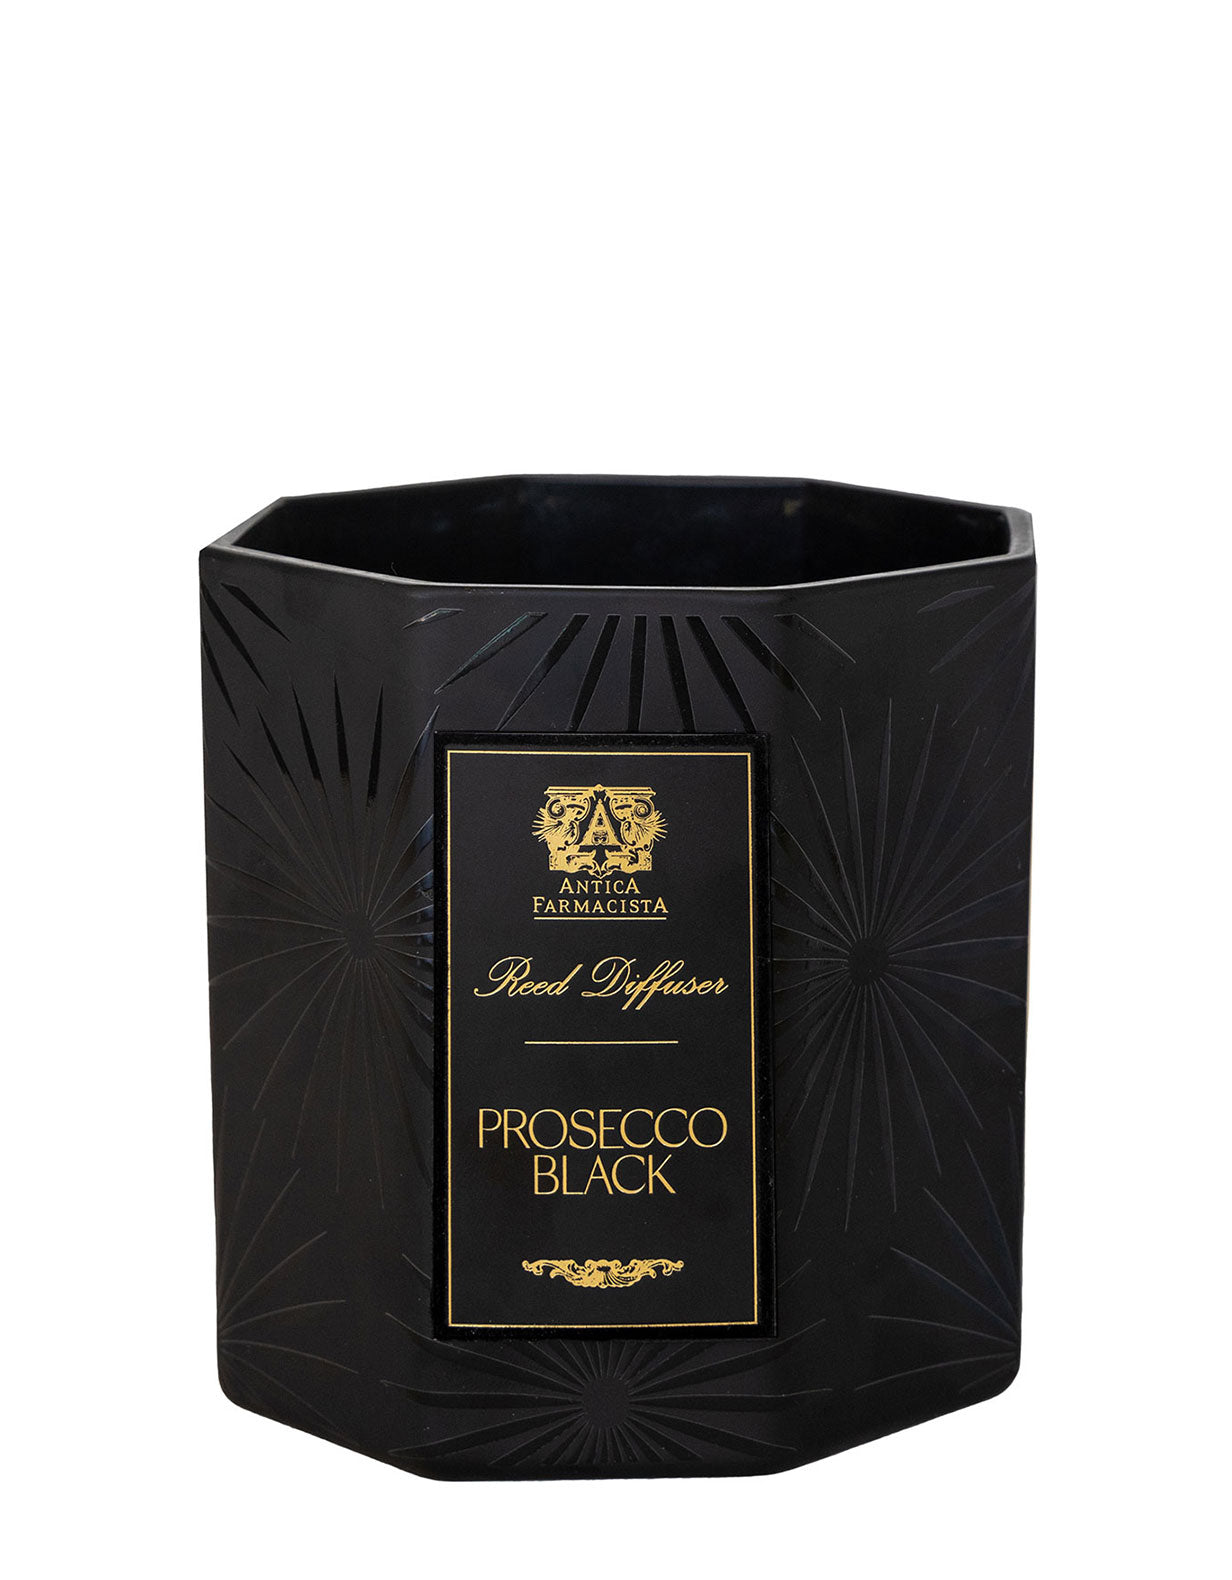 Prosecco Black Three-Wick Candle